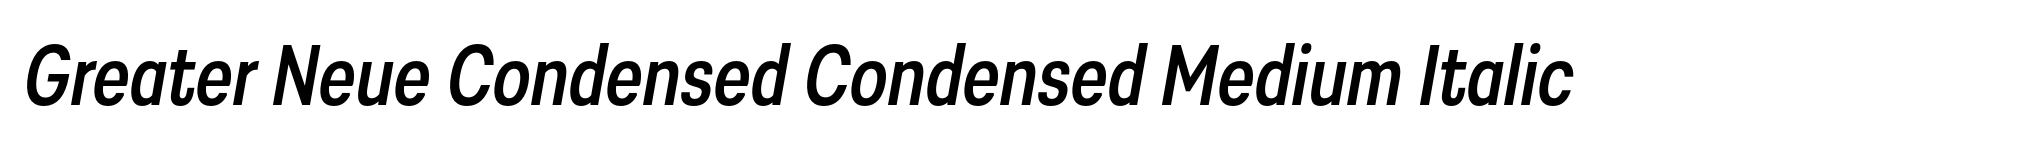 Greater Neue Condensed Condensed Medium Italic image